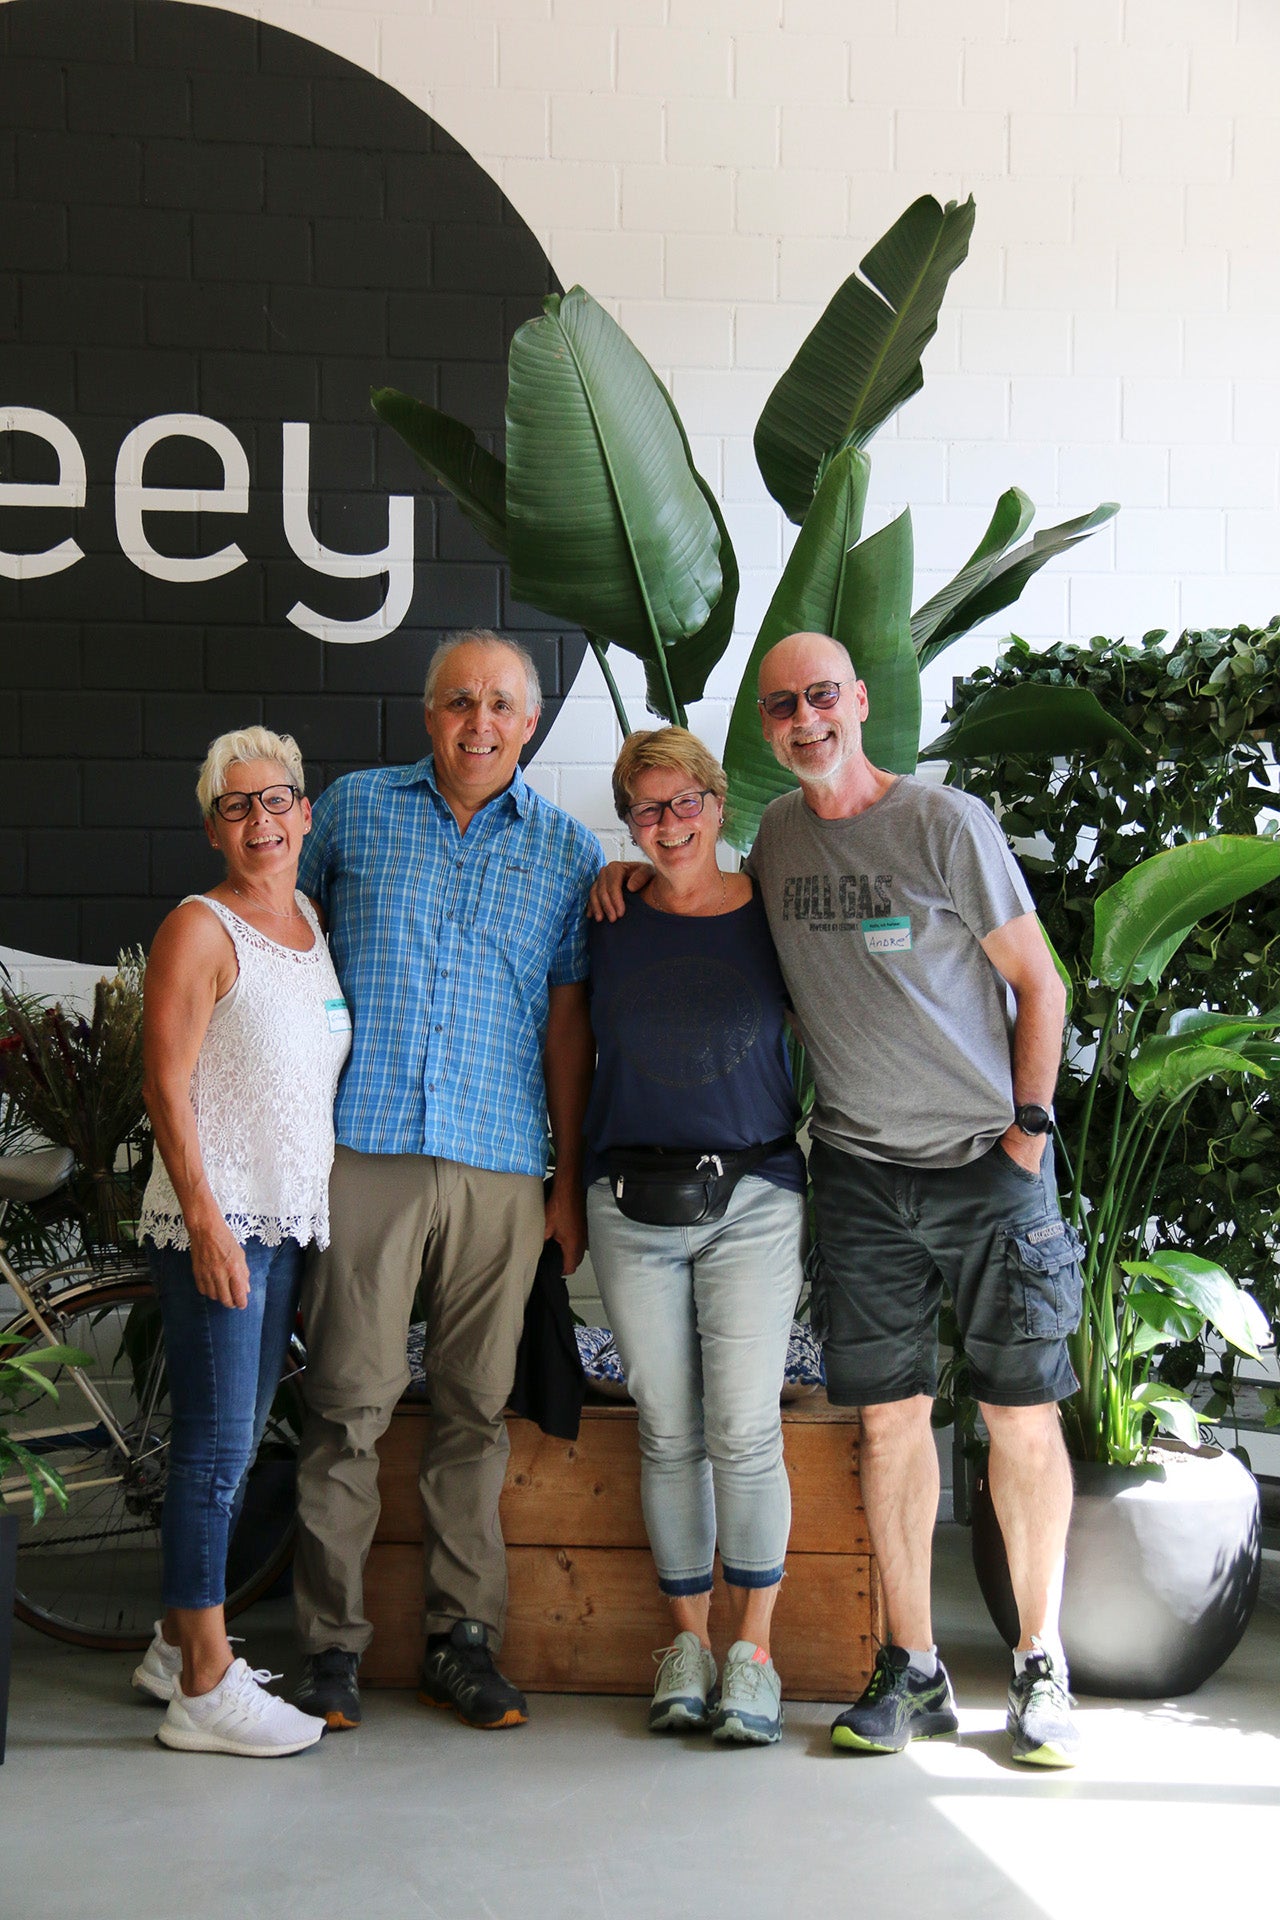 Vier Personen vor dem feey-Logo und einer grossen Strelitzie.